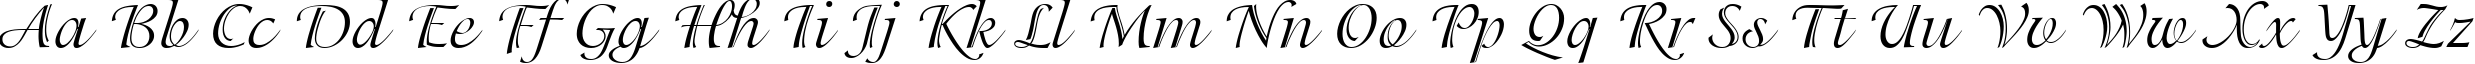 Пример написания английского алфавита шрифтом PG Isadora Cyr Pro Regular